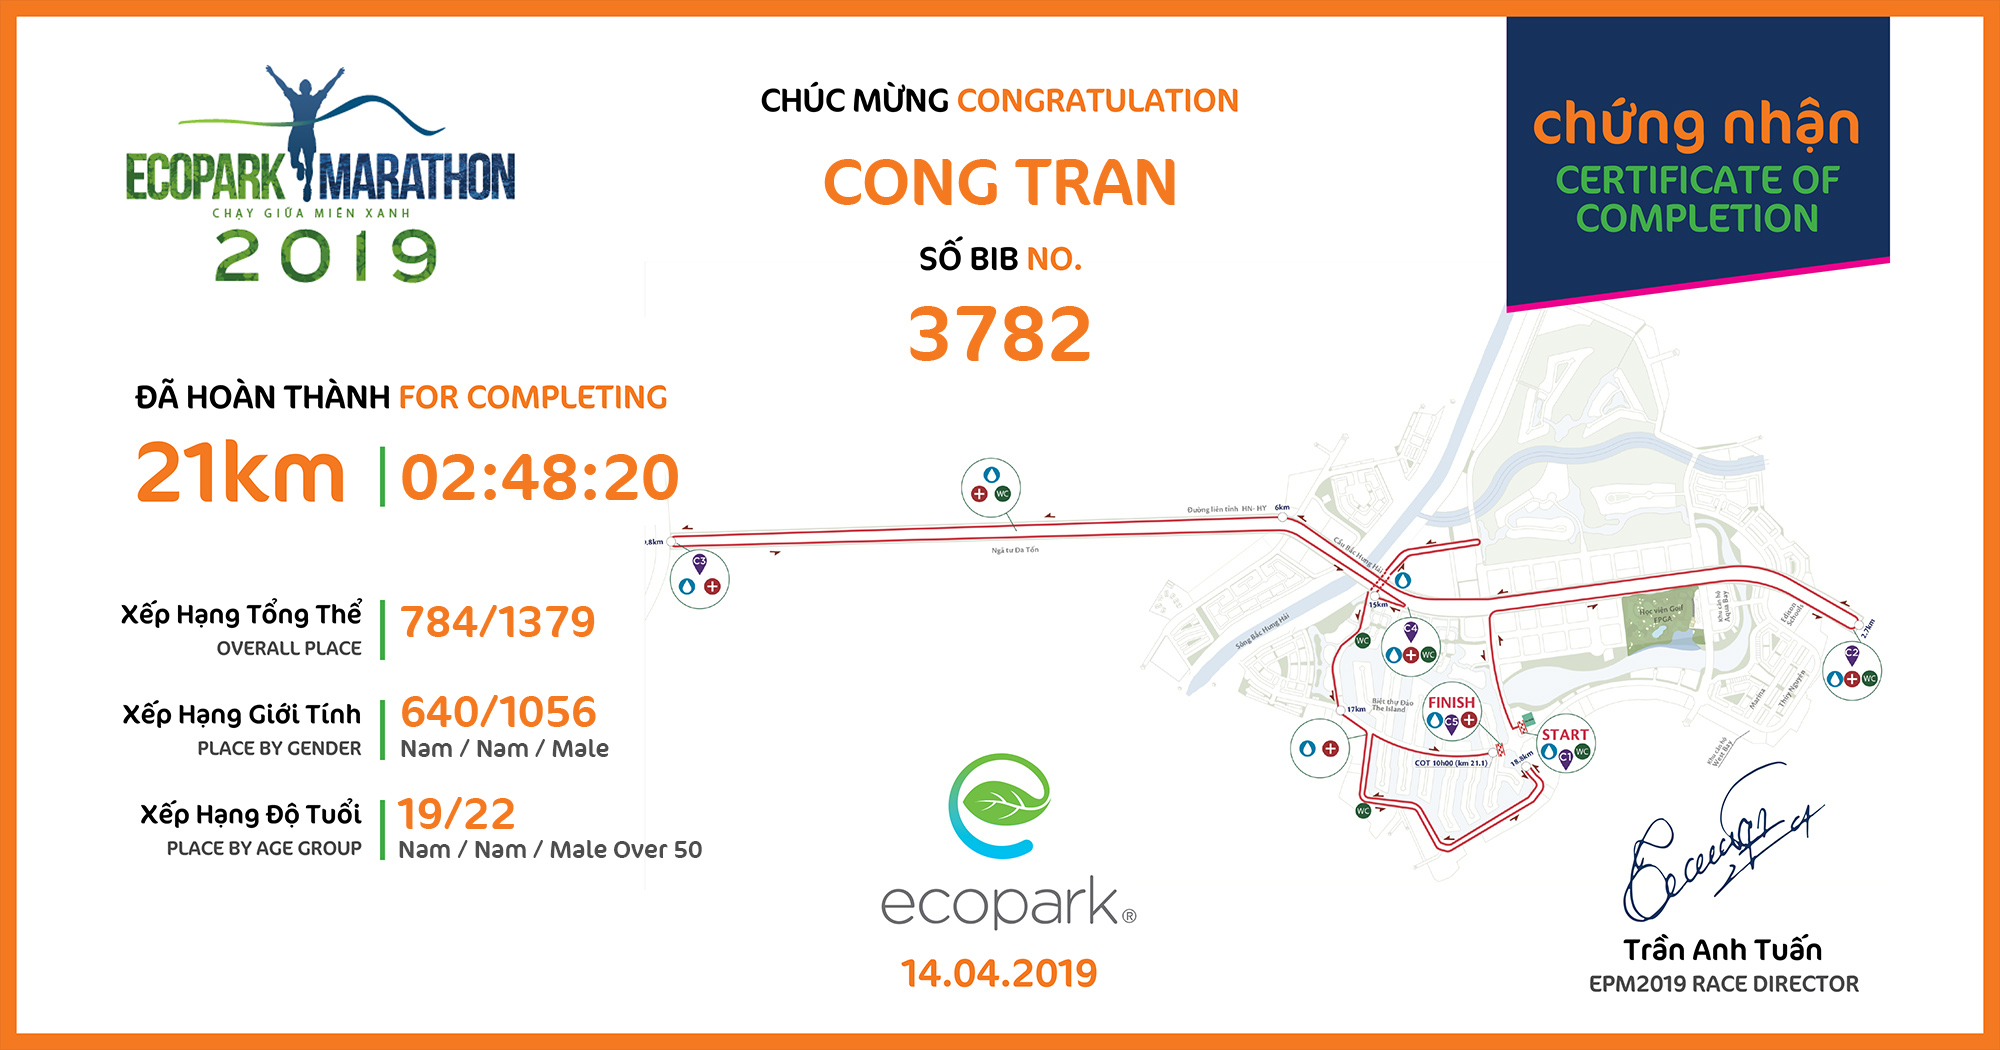 3782 - Cong Tran